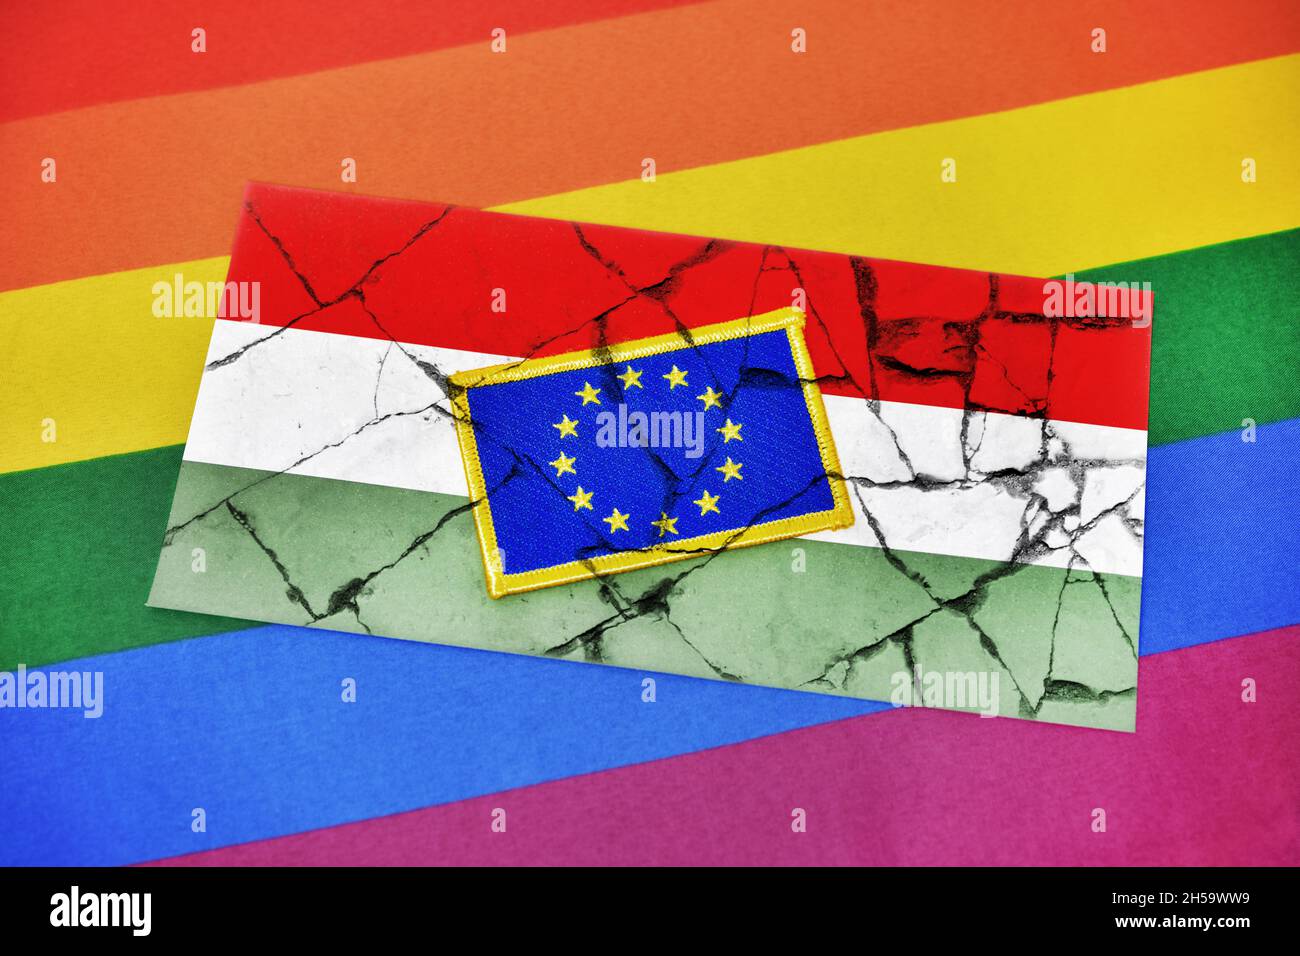 FOTOMONTAGE, Fahnen von EU und Ungarn auf gebrochenem Grund und Regenbogenfahne, Streit um ungarisches LGBTQ-Gesetz Stock Photo